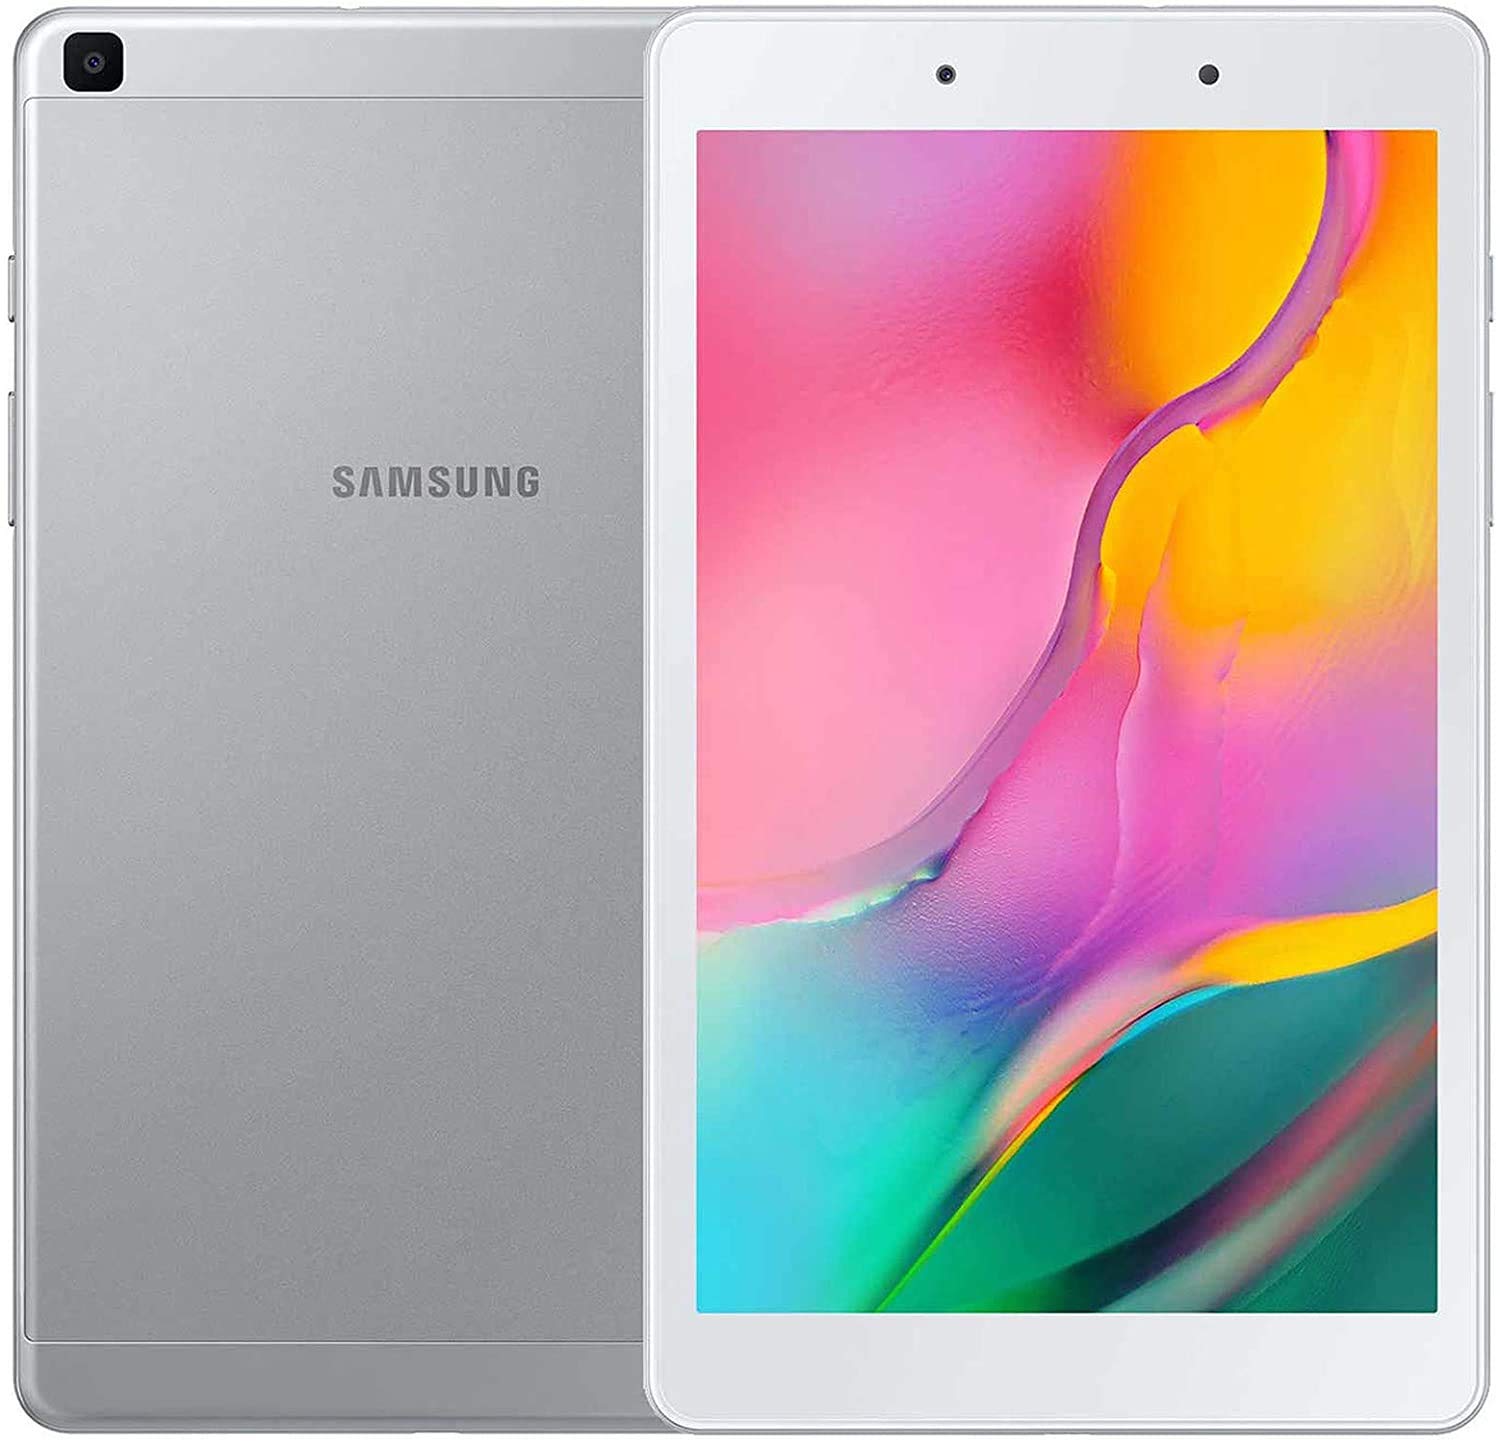 معرفی تبلت ارزان قیمت  Samsung Galaxy Tab A 8.0 